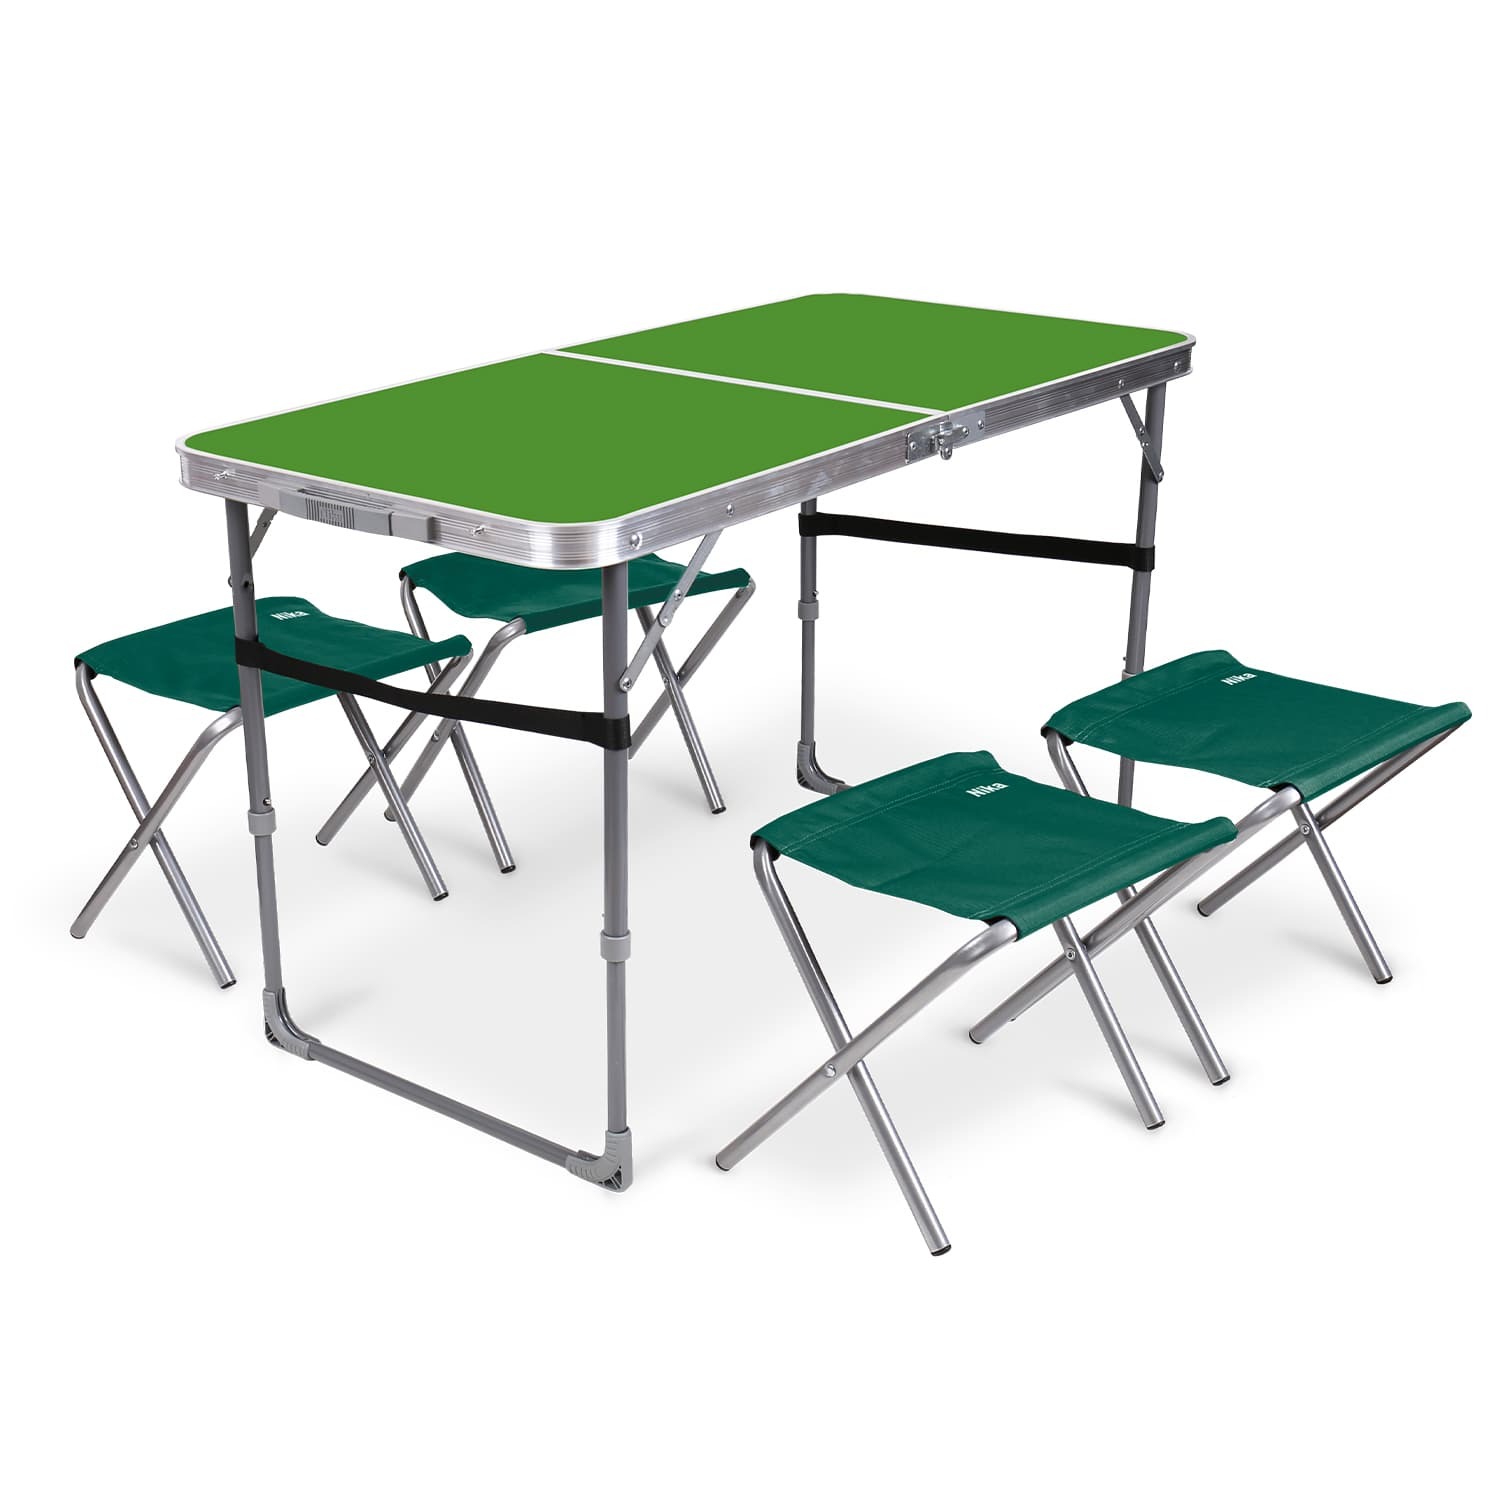 Комплект складной мебели Ника зеленый стол с изумрудными табуретами 5 предметов складной тканевый табурет ццц стулья сайт